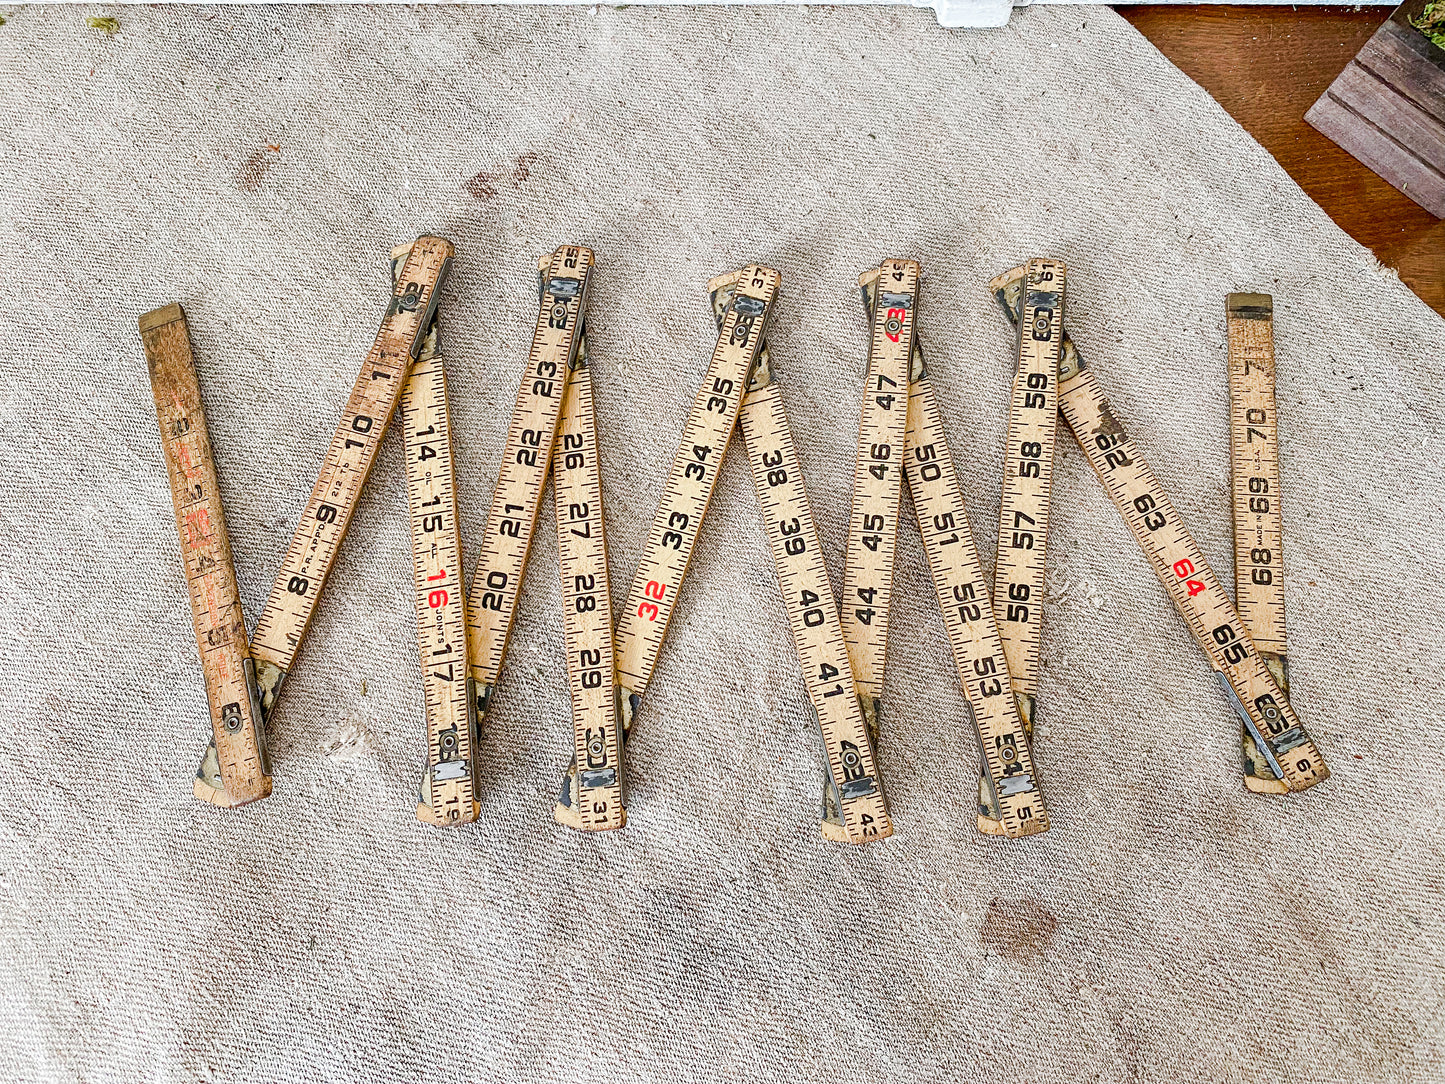 Vintage Folding Ruler, Lufkin Carpenter's Chippy Foldable 72" Wooden Measuring Stick, No. X46